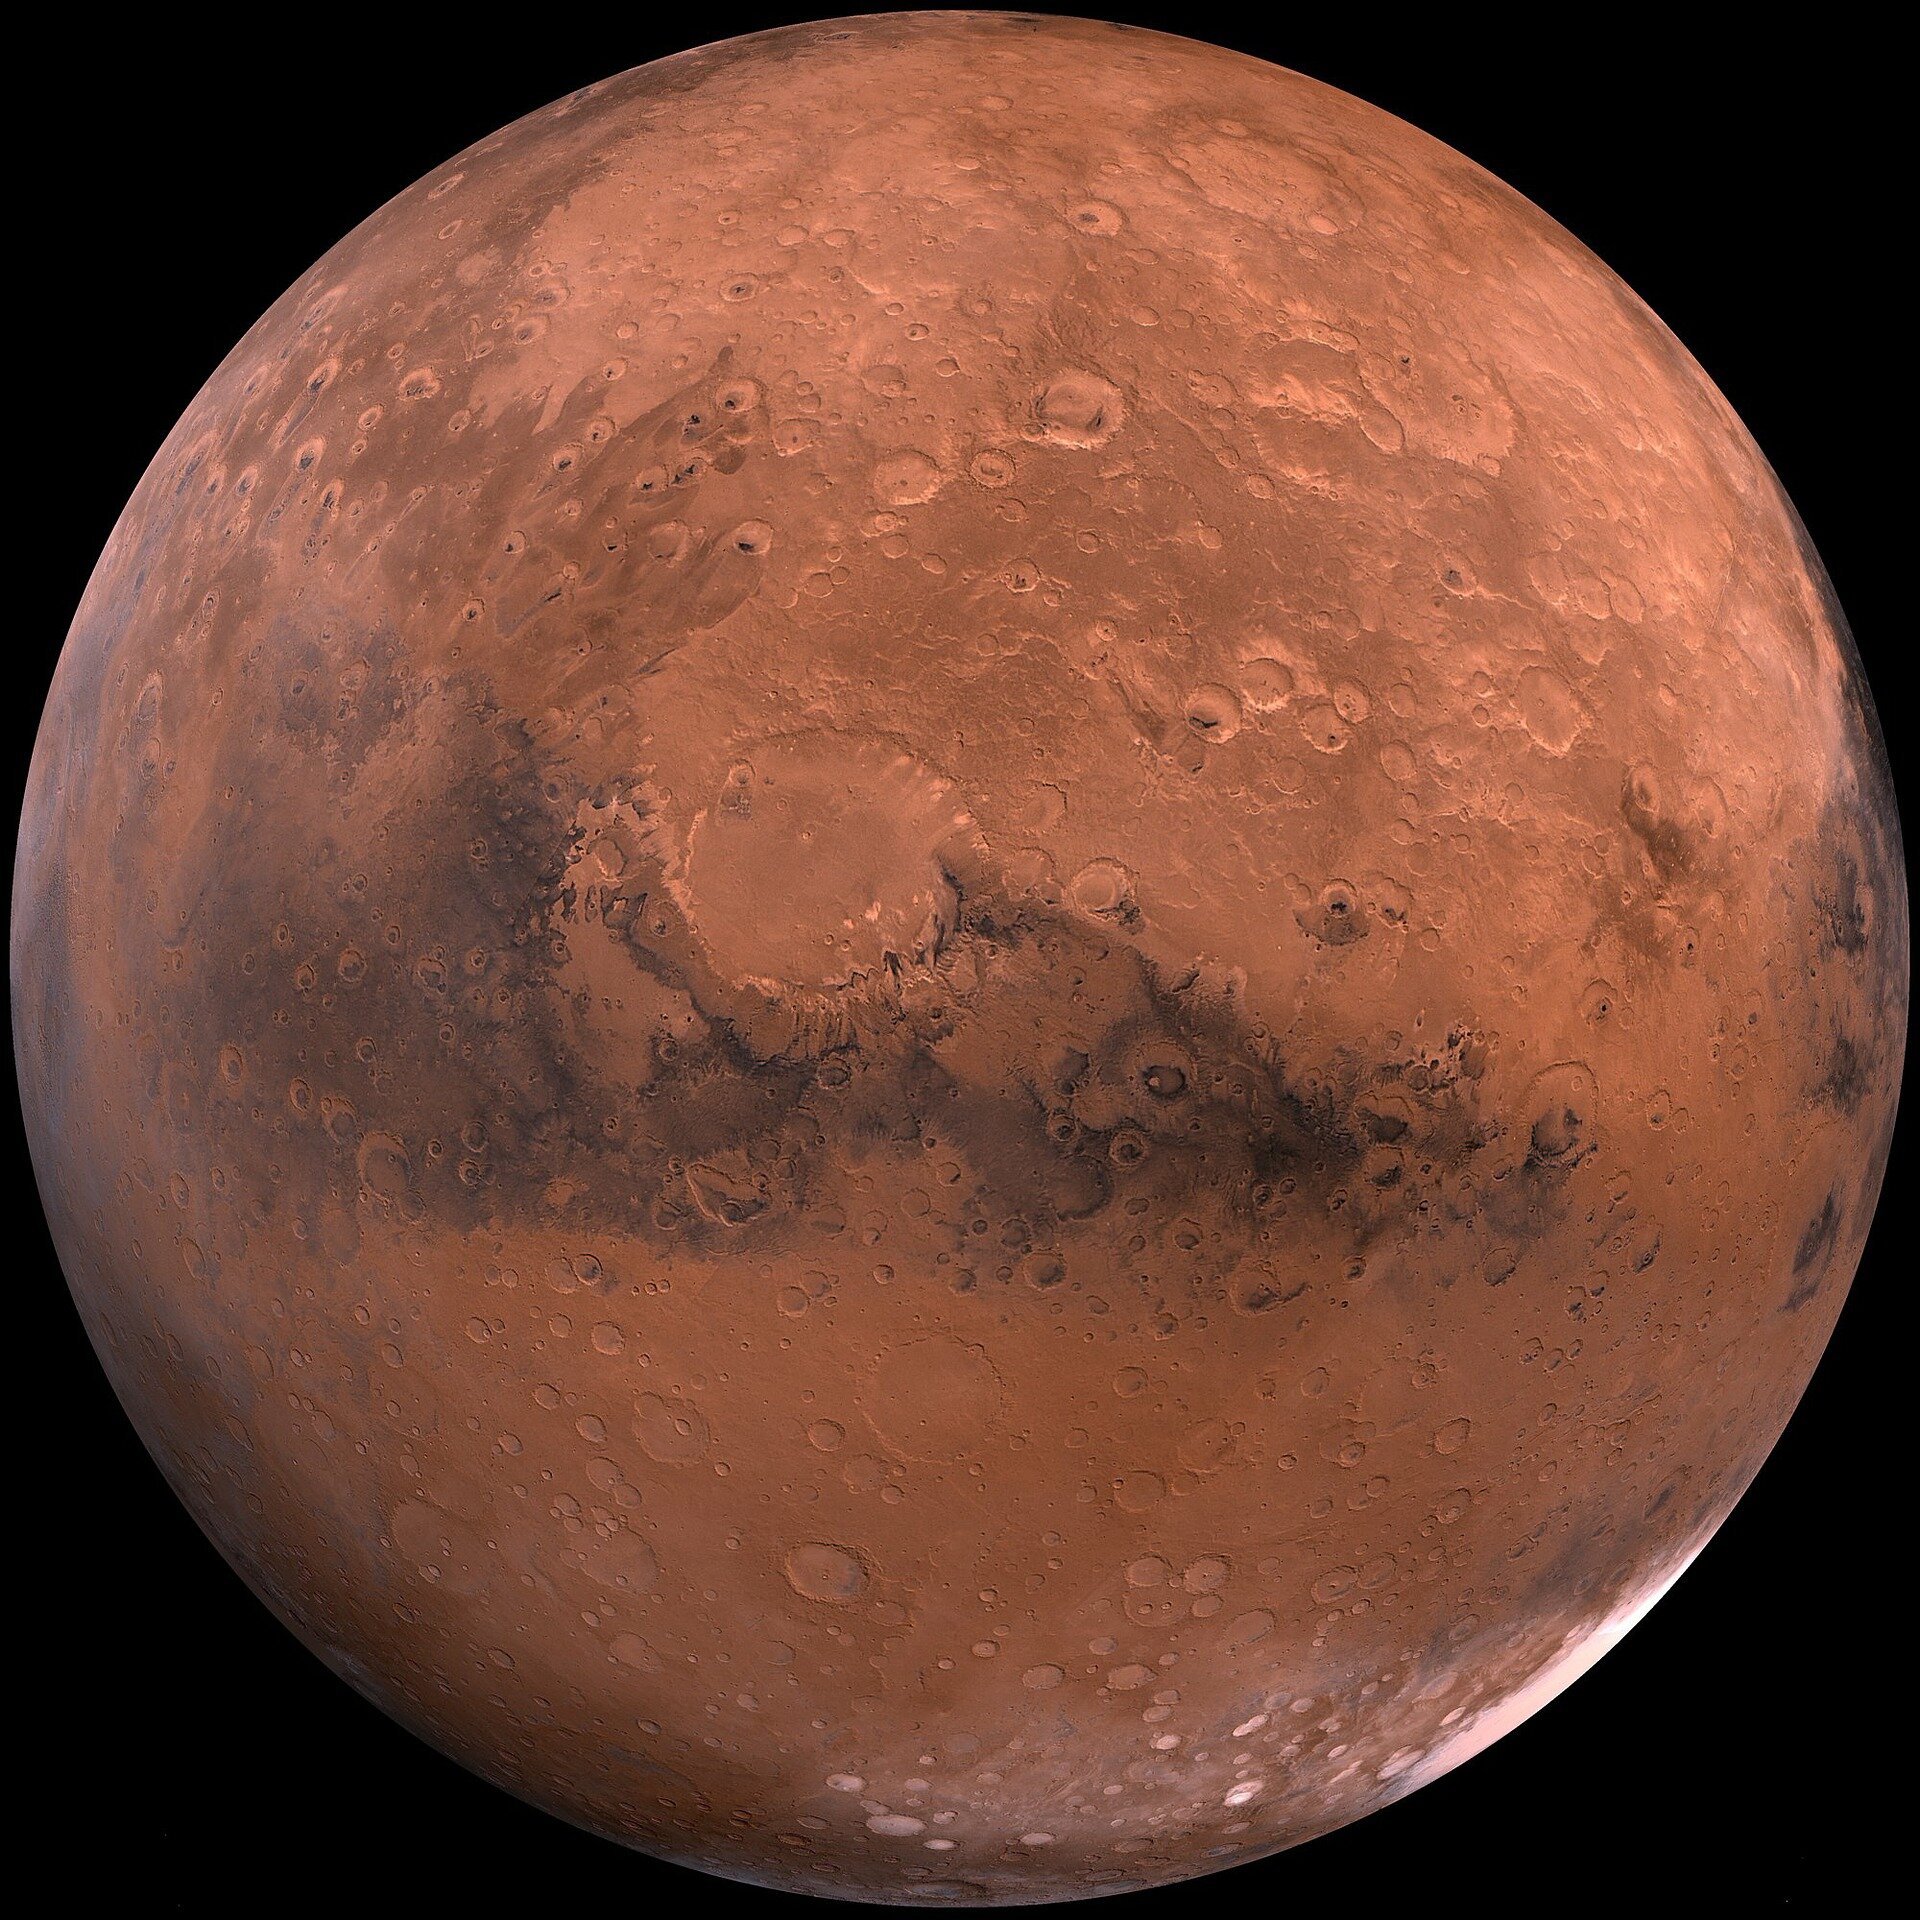 أعلن العلماء عن اختراق في تحديد أصل الحياة على الأرض – وربما المريخ